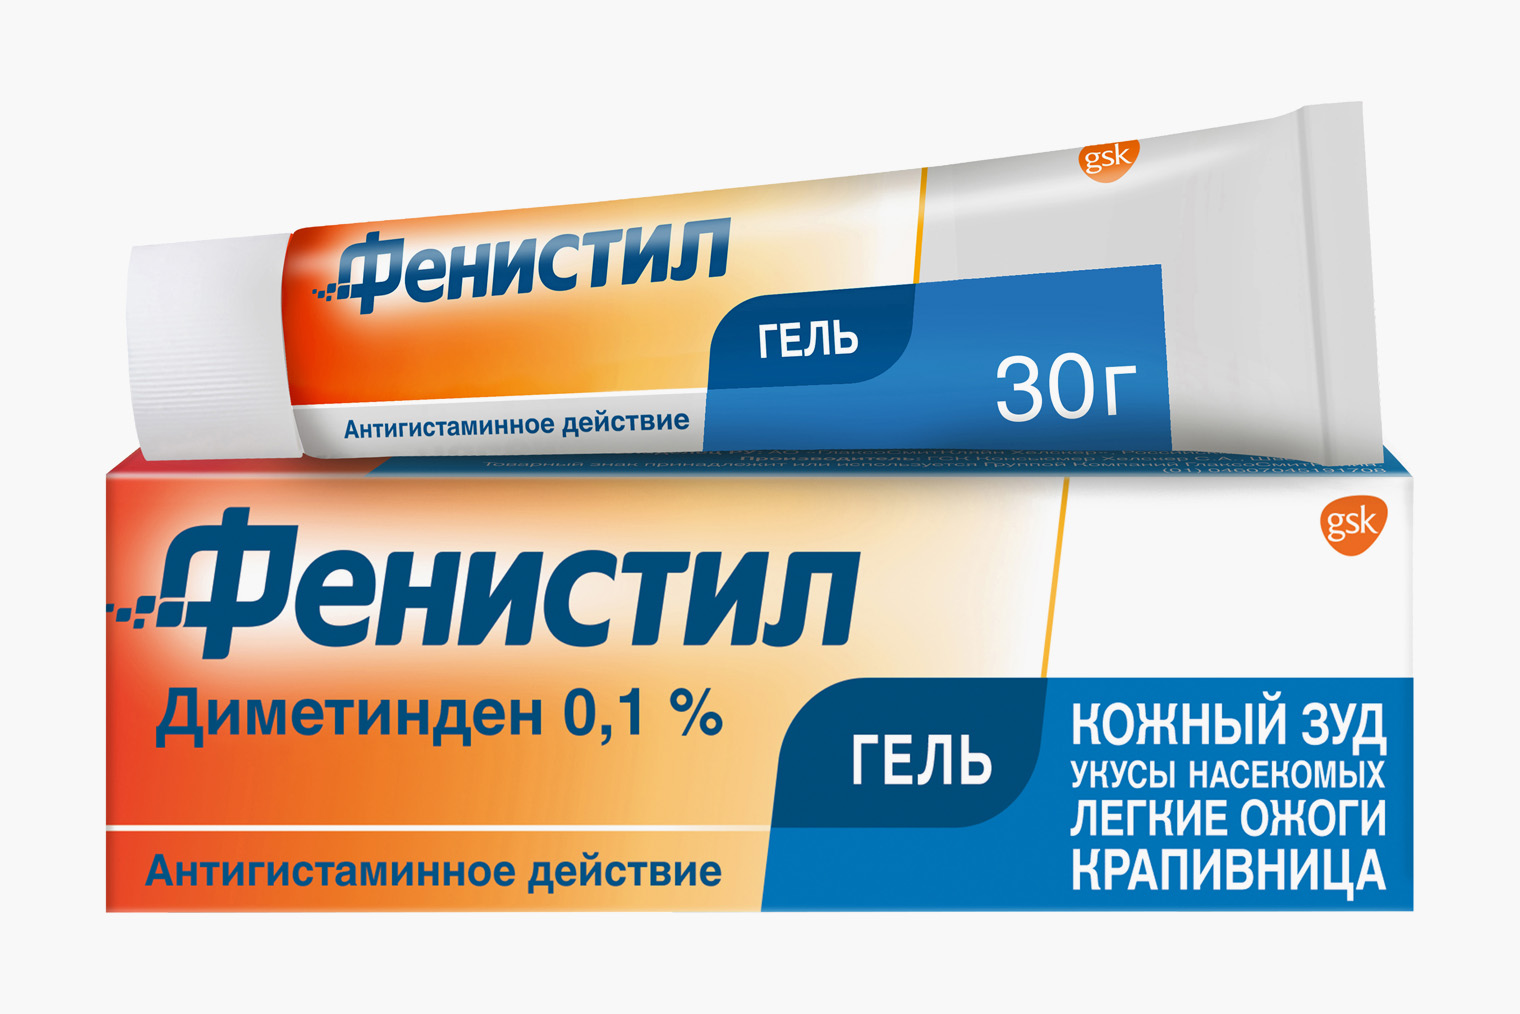 Цена за 30 граммов популярного препарата с диметинденом «Фенистил» начинается от 250 ₽, цена за менее популярный дженерик «Диметинден» — от 221 ₽